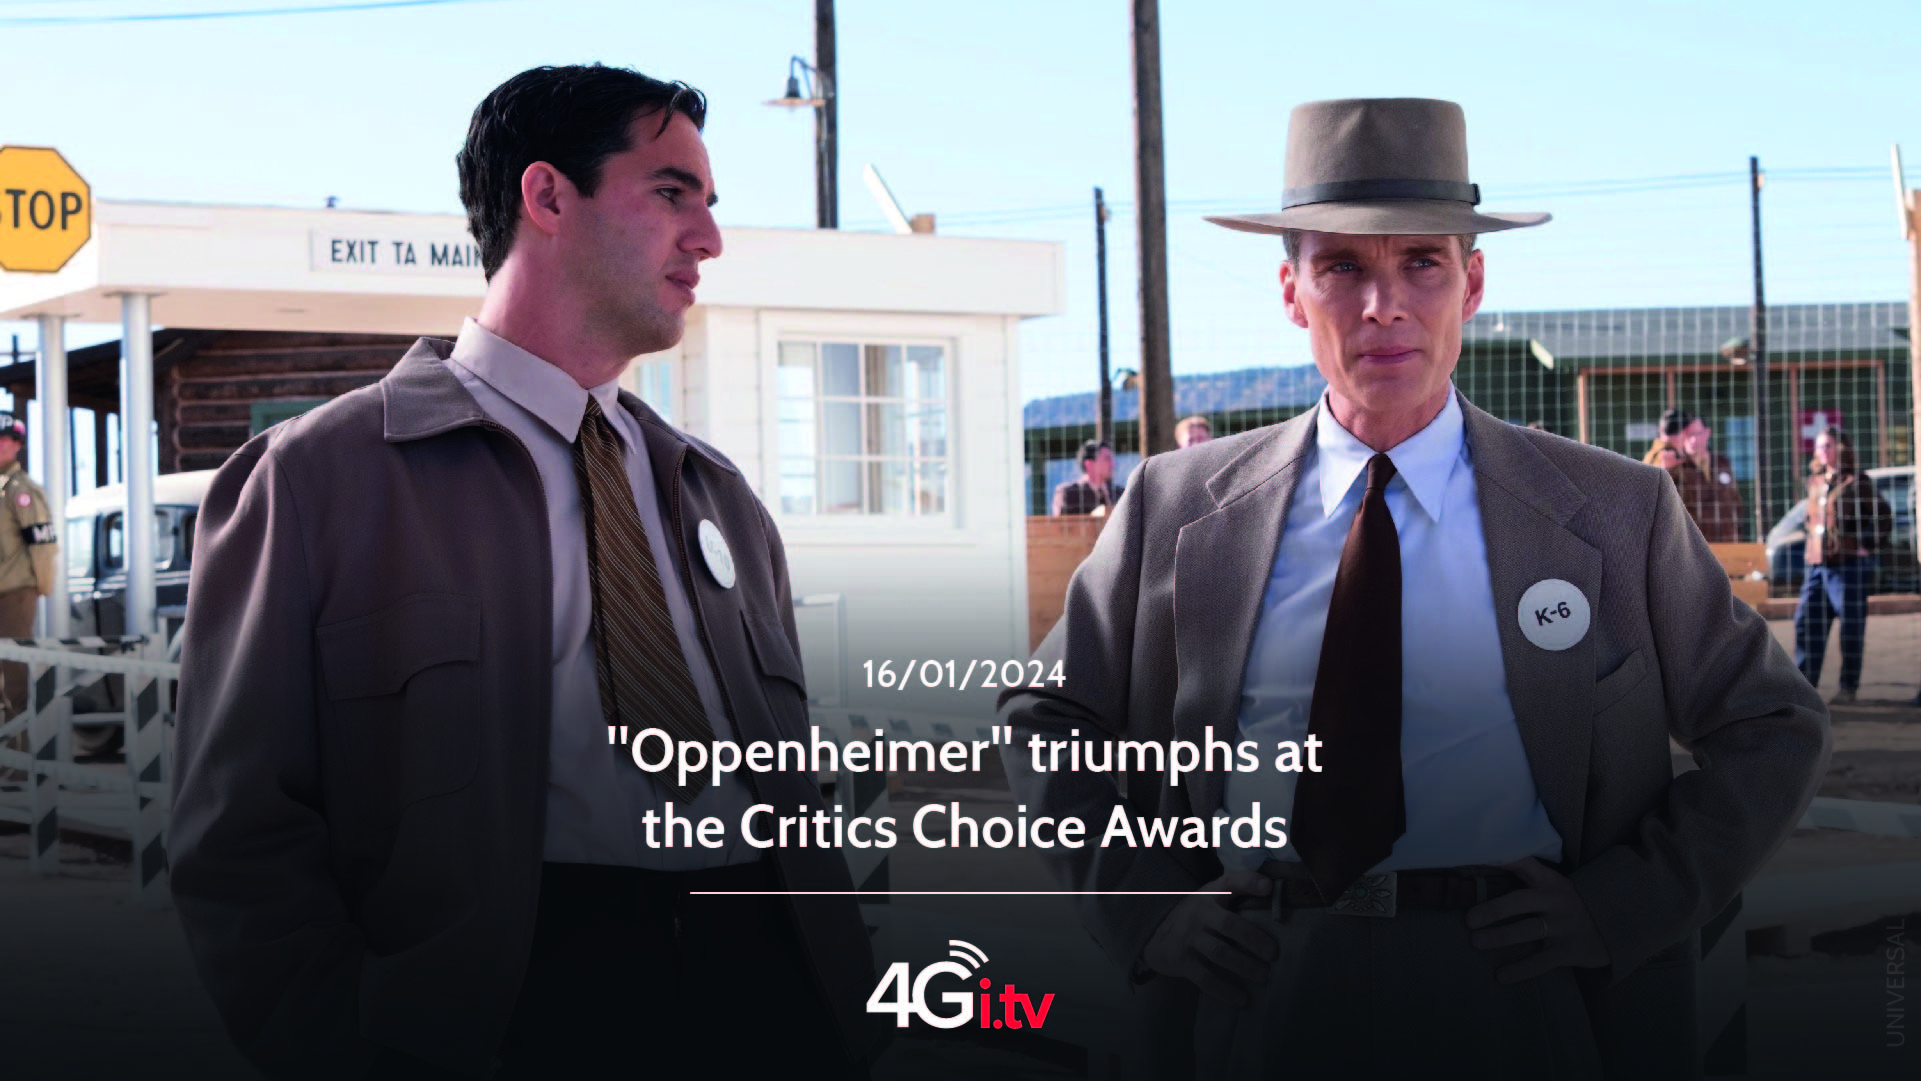 Подробнее о статье “Oppenheimer” triumphs at the Critics Choice Awards